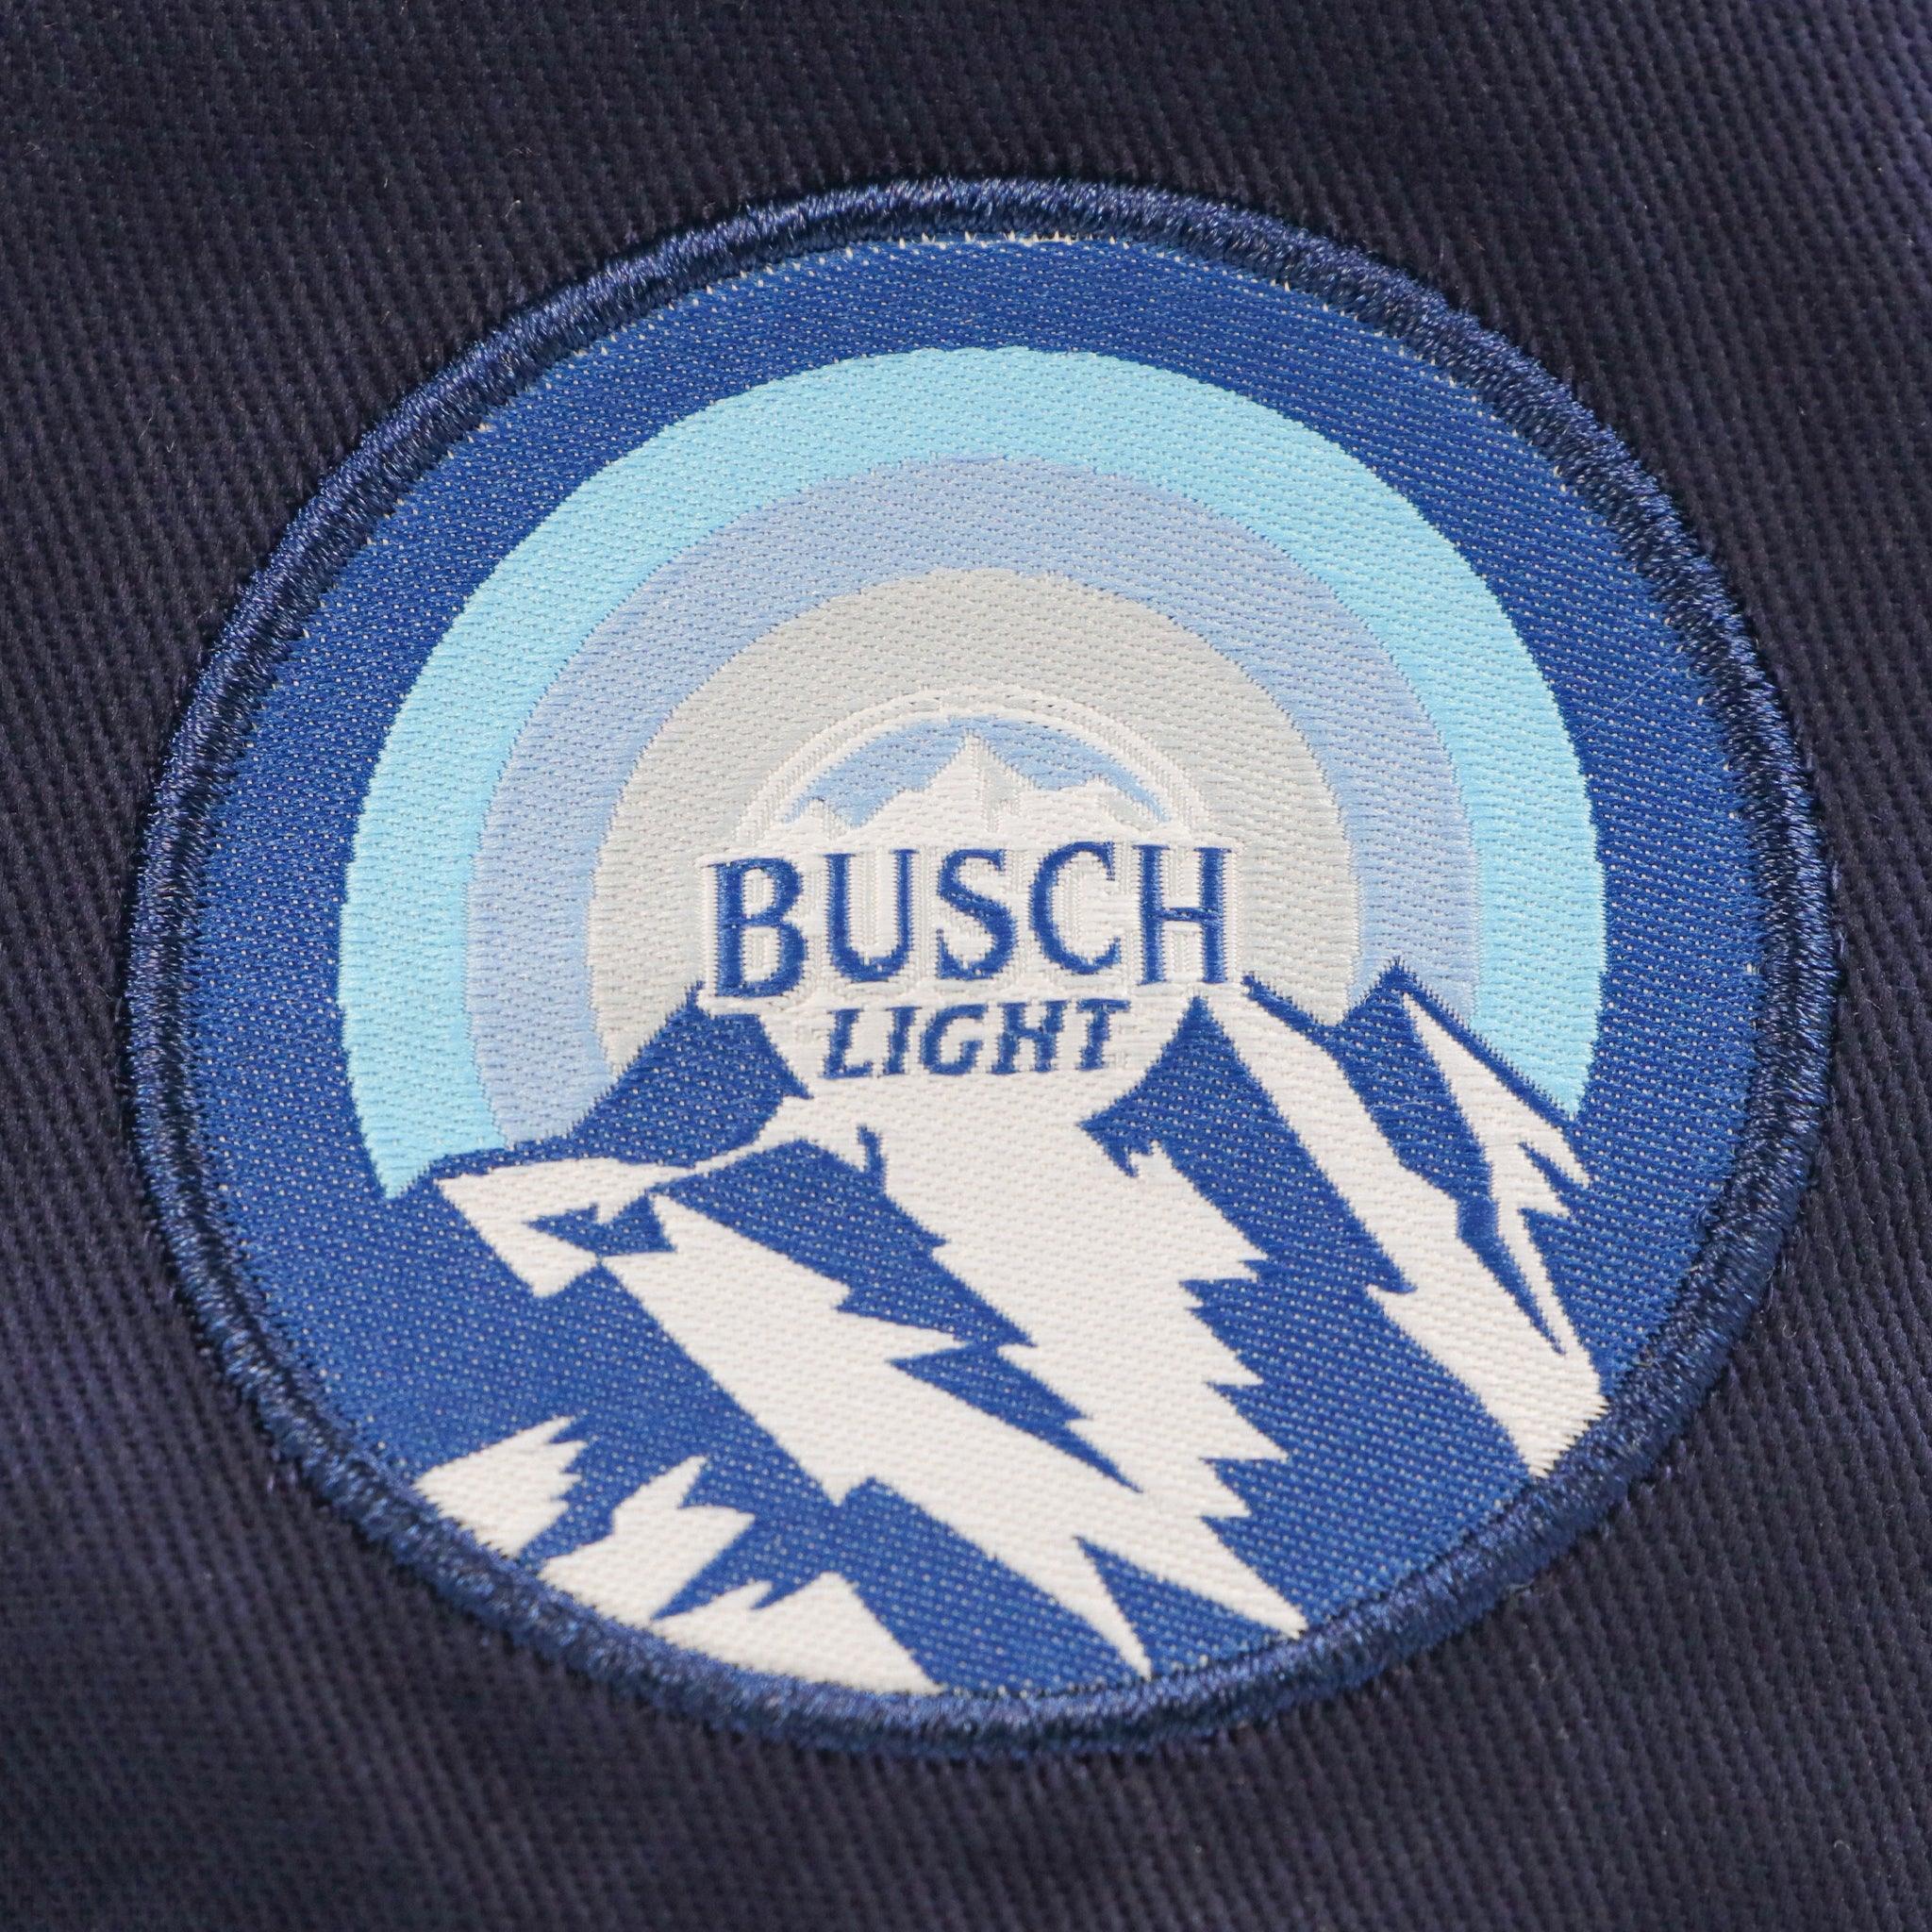 Anheuser-Busch's Official Online Merch Store